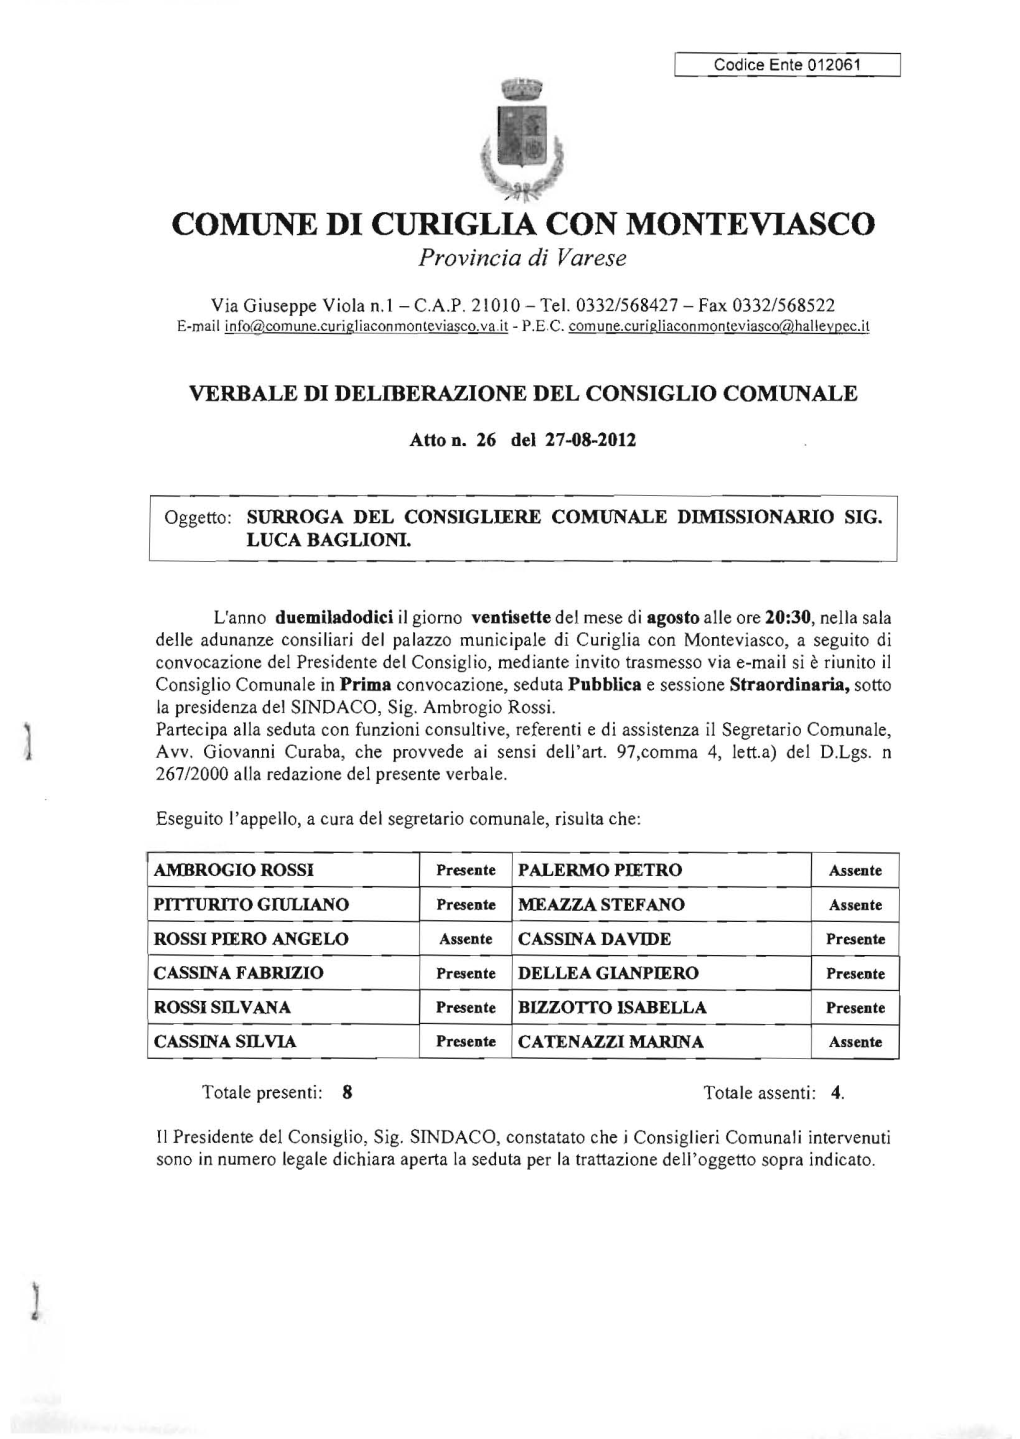 COMUNE DI CURIGLIA CON MONTEVIASCO Provincia Di Varese